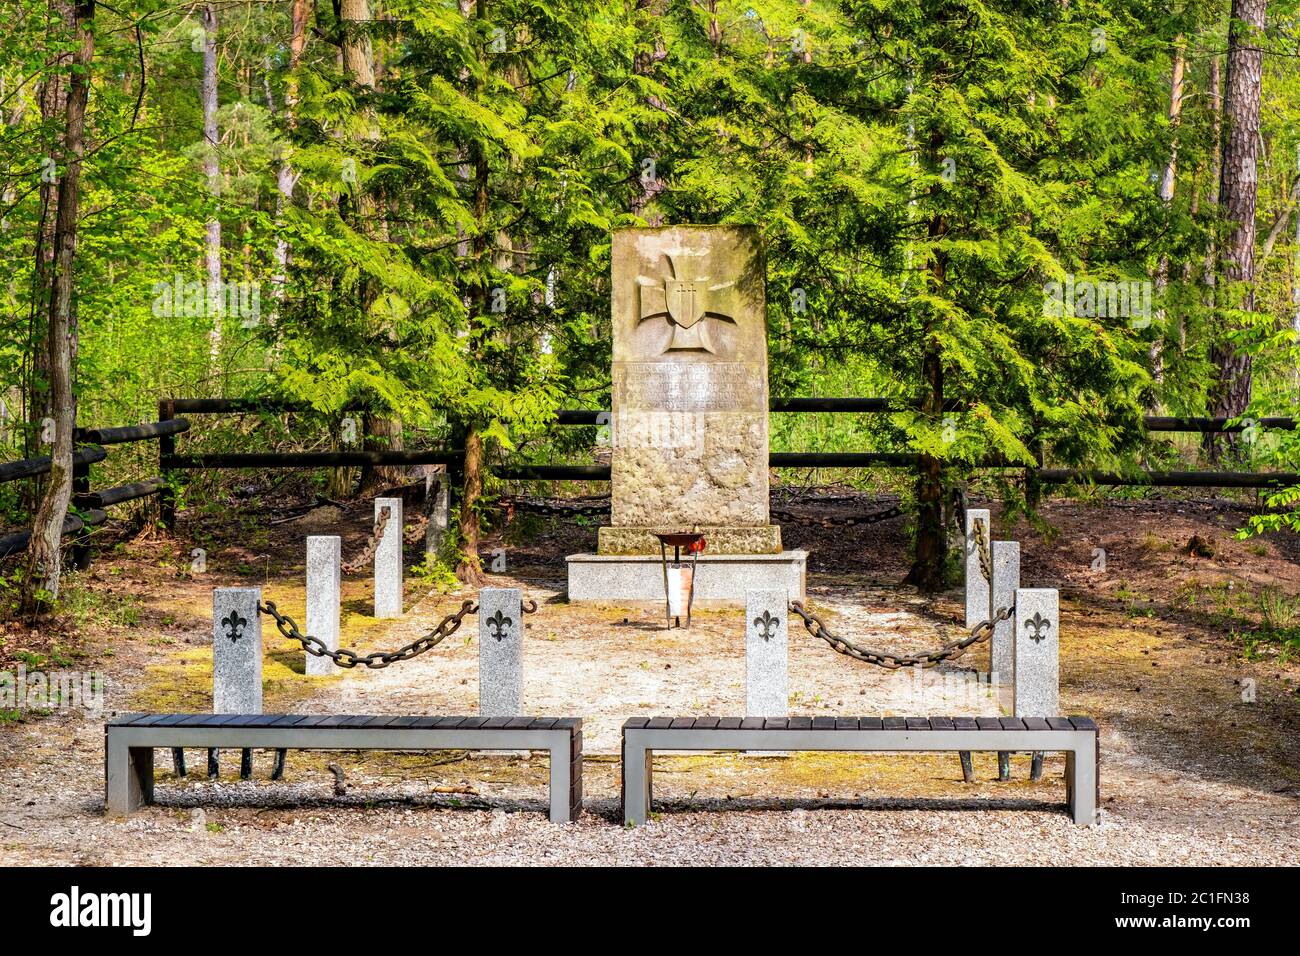 Chojnow, Mazovia / Polonia - 2020/05/10: Memoriale della foresta dei ranghi grigi - Szare Szeregi - scout eseguiti dai nazisti durante la seconda guerra mondiale sul fiume Czarna Foto Stock